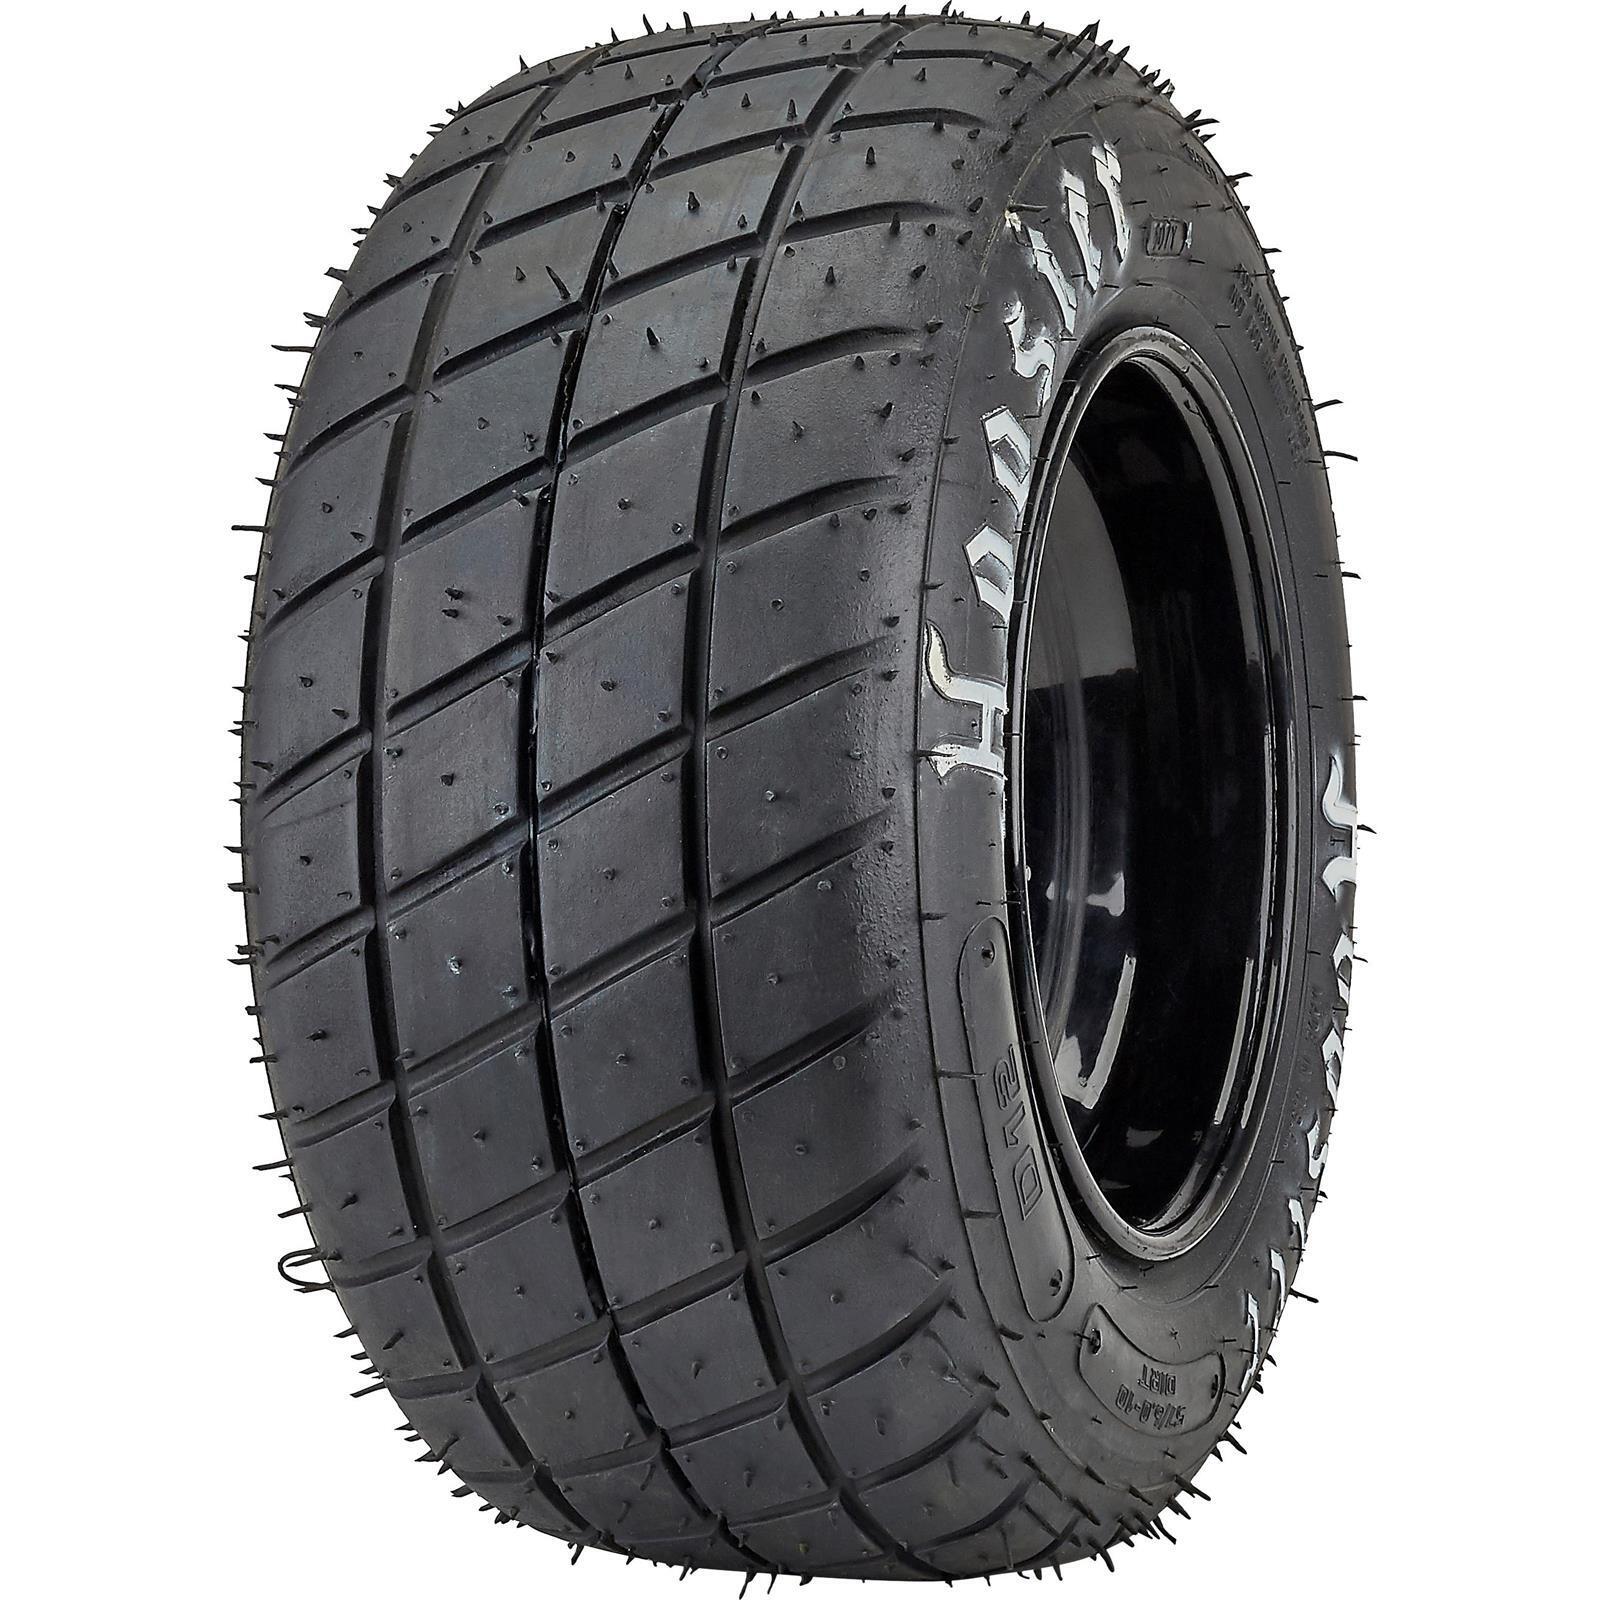 Hoosier 42050-D12 Midget, Micro, Jr Sprint Tire, 57.0/6.0-10, D12